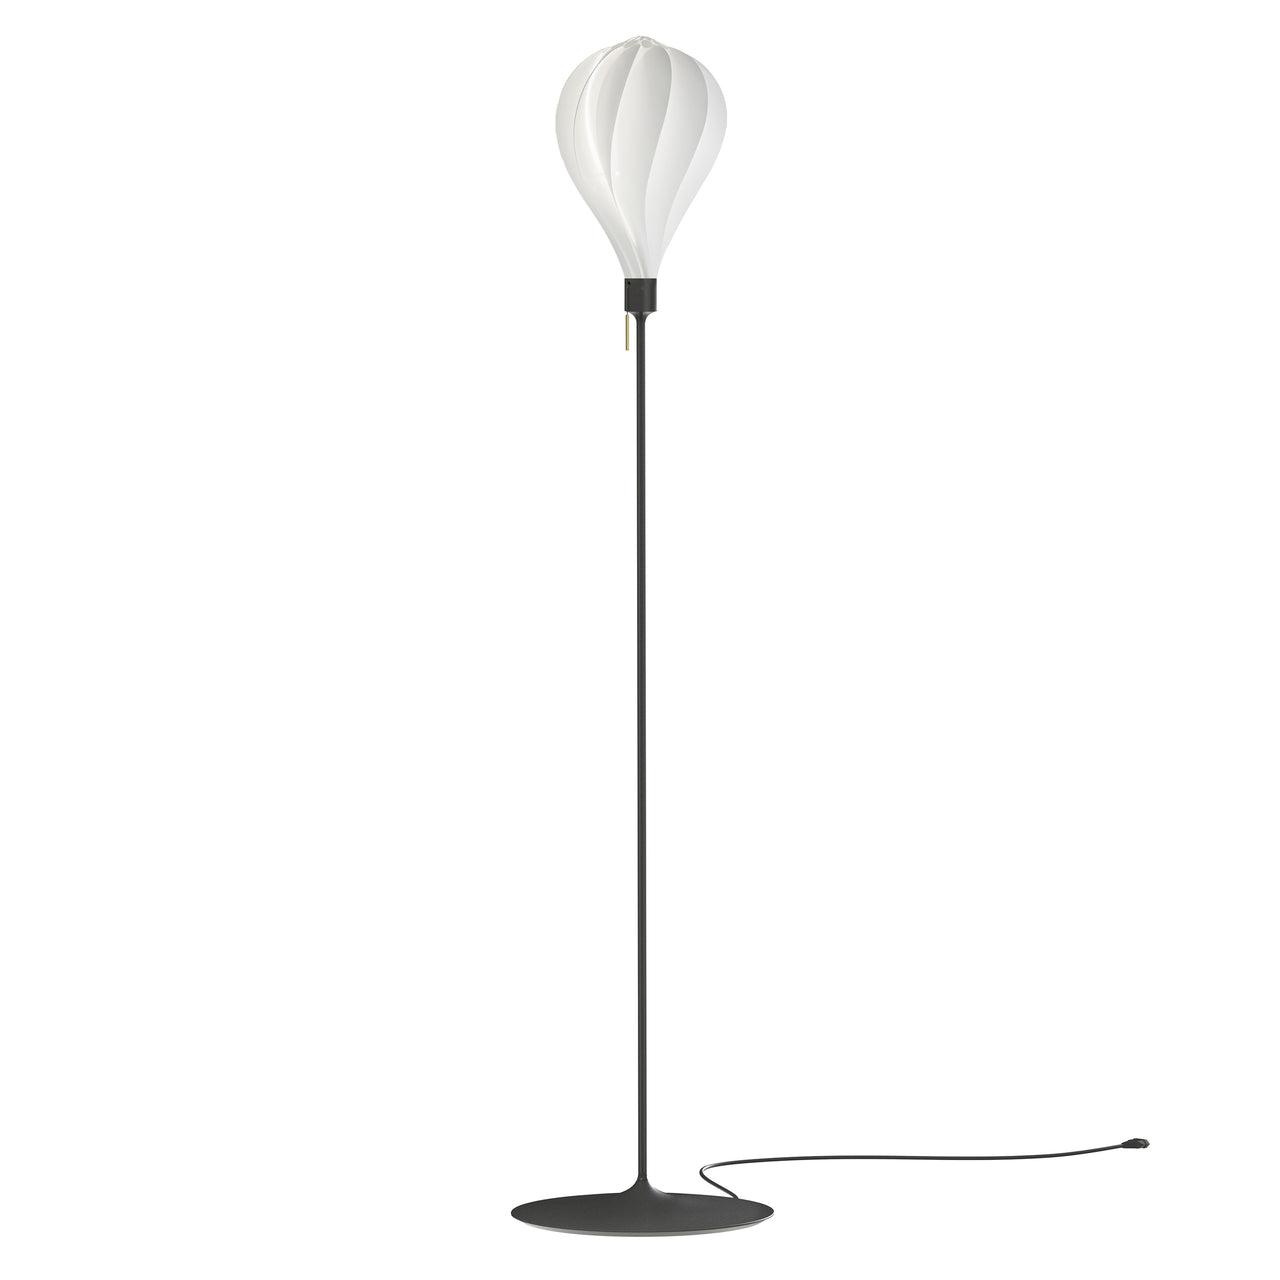 Alva Champagne Floor Lamp: Medium - 9.6